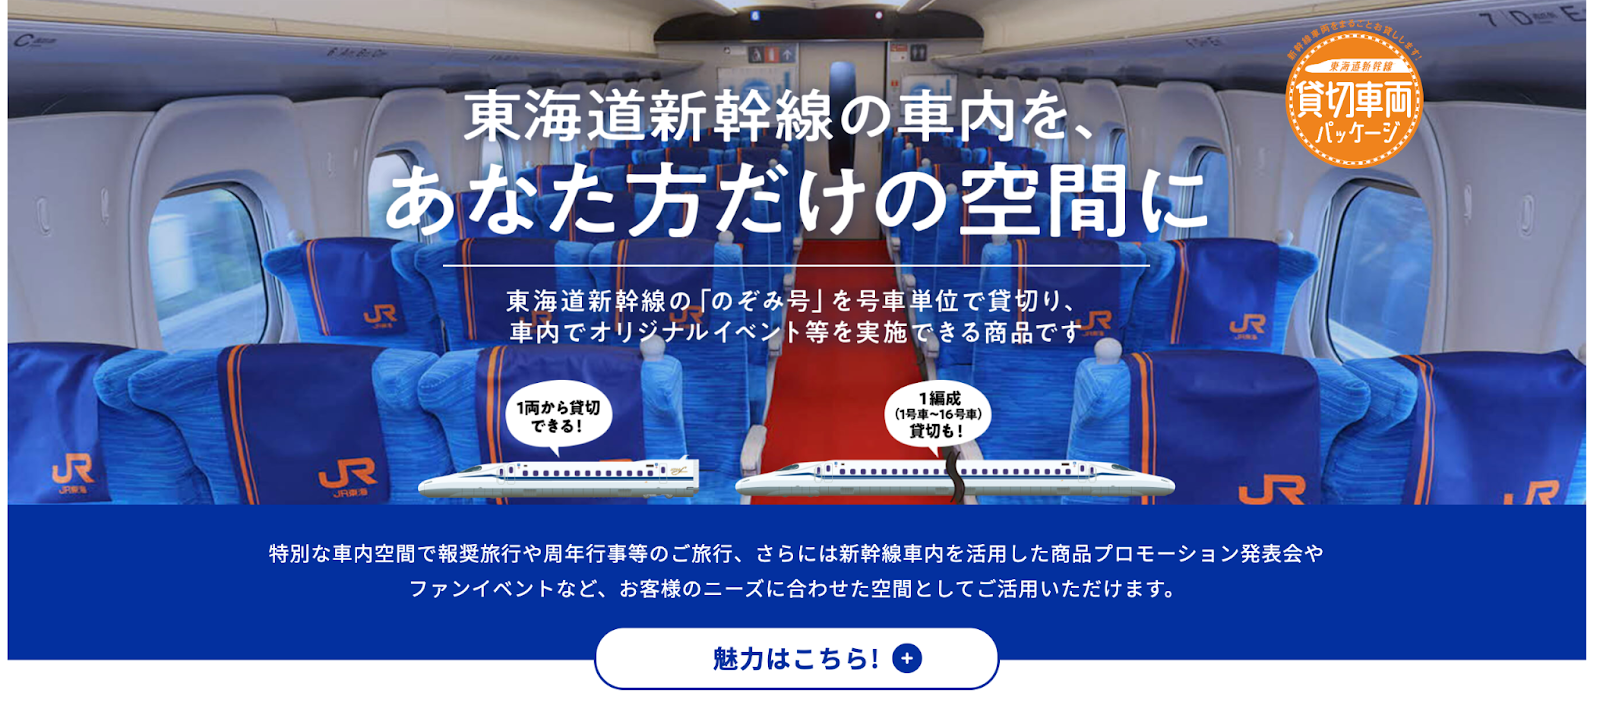 東海道新幹線 | 貸切車両パッケージ